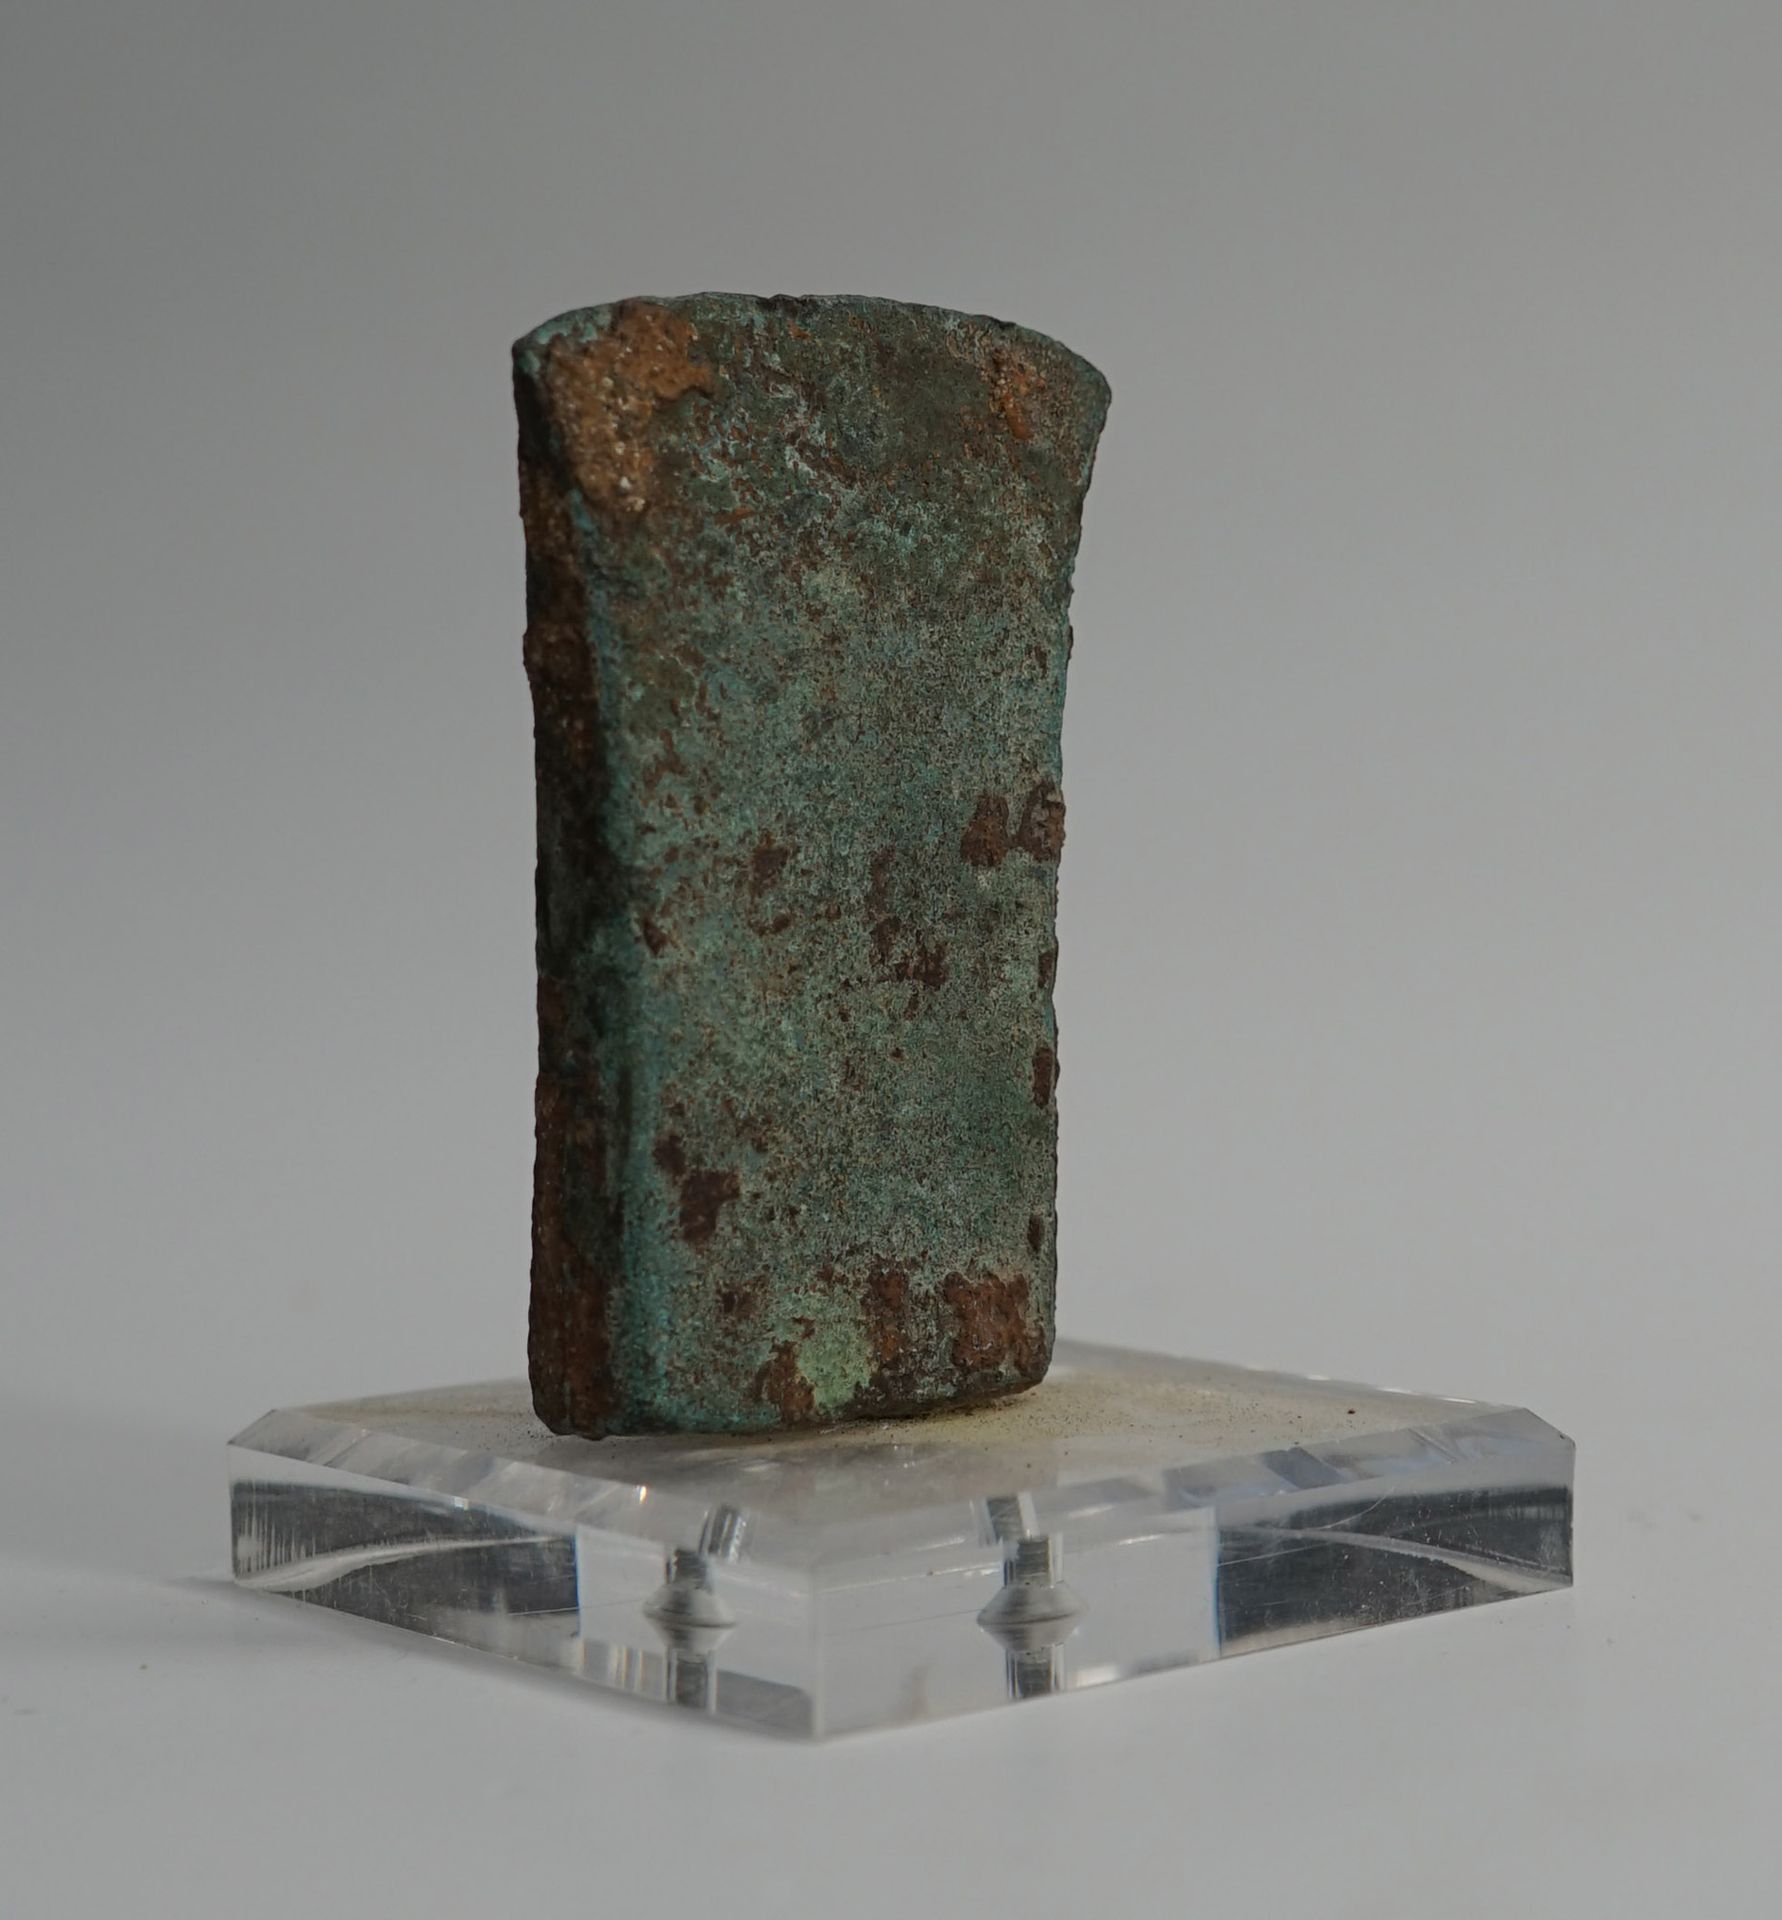 Null Axtblatt aus Bronze oder Kupfer mit Ausgrabungspatina. 9x6cm